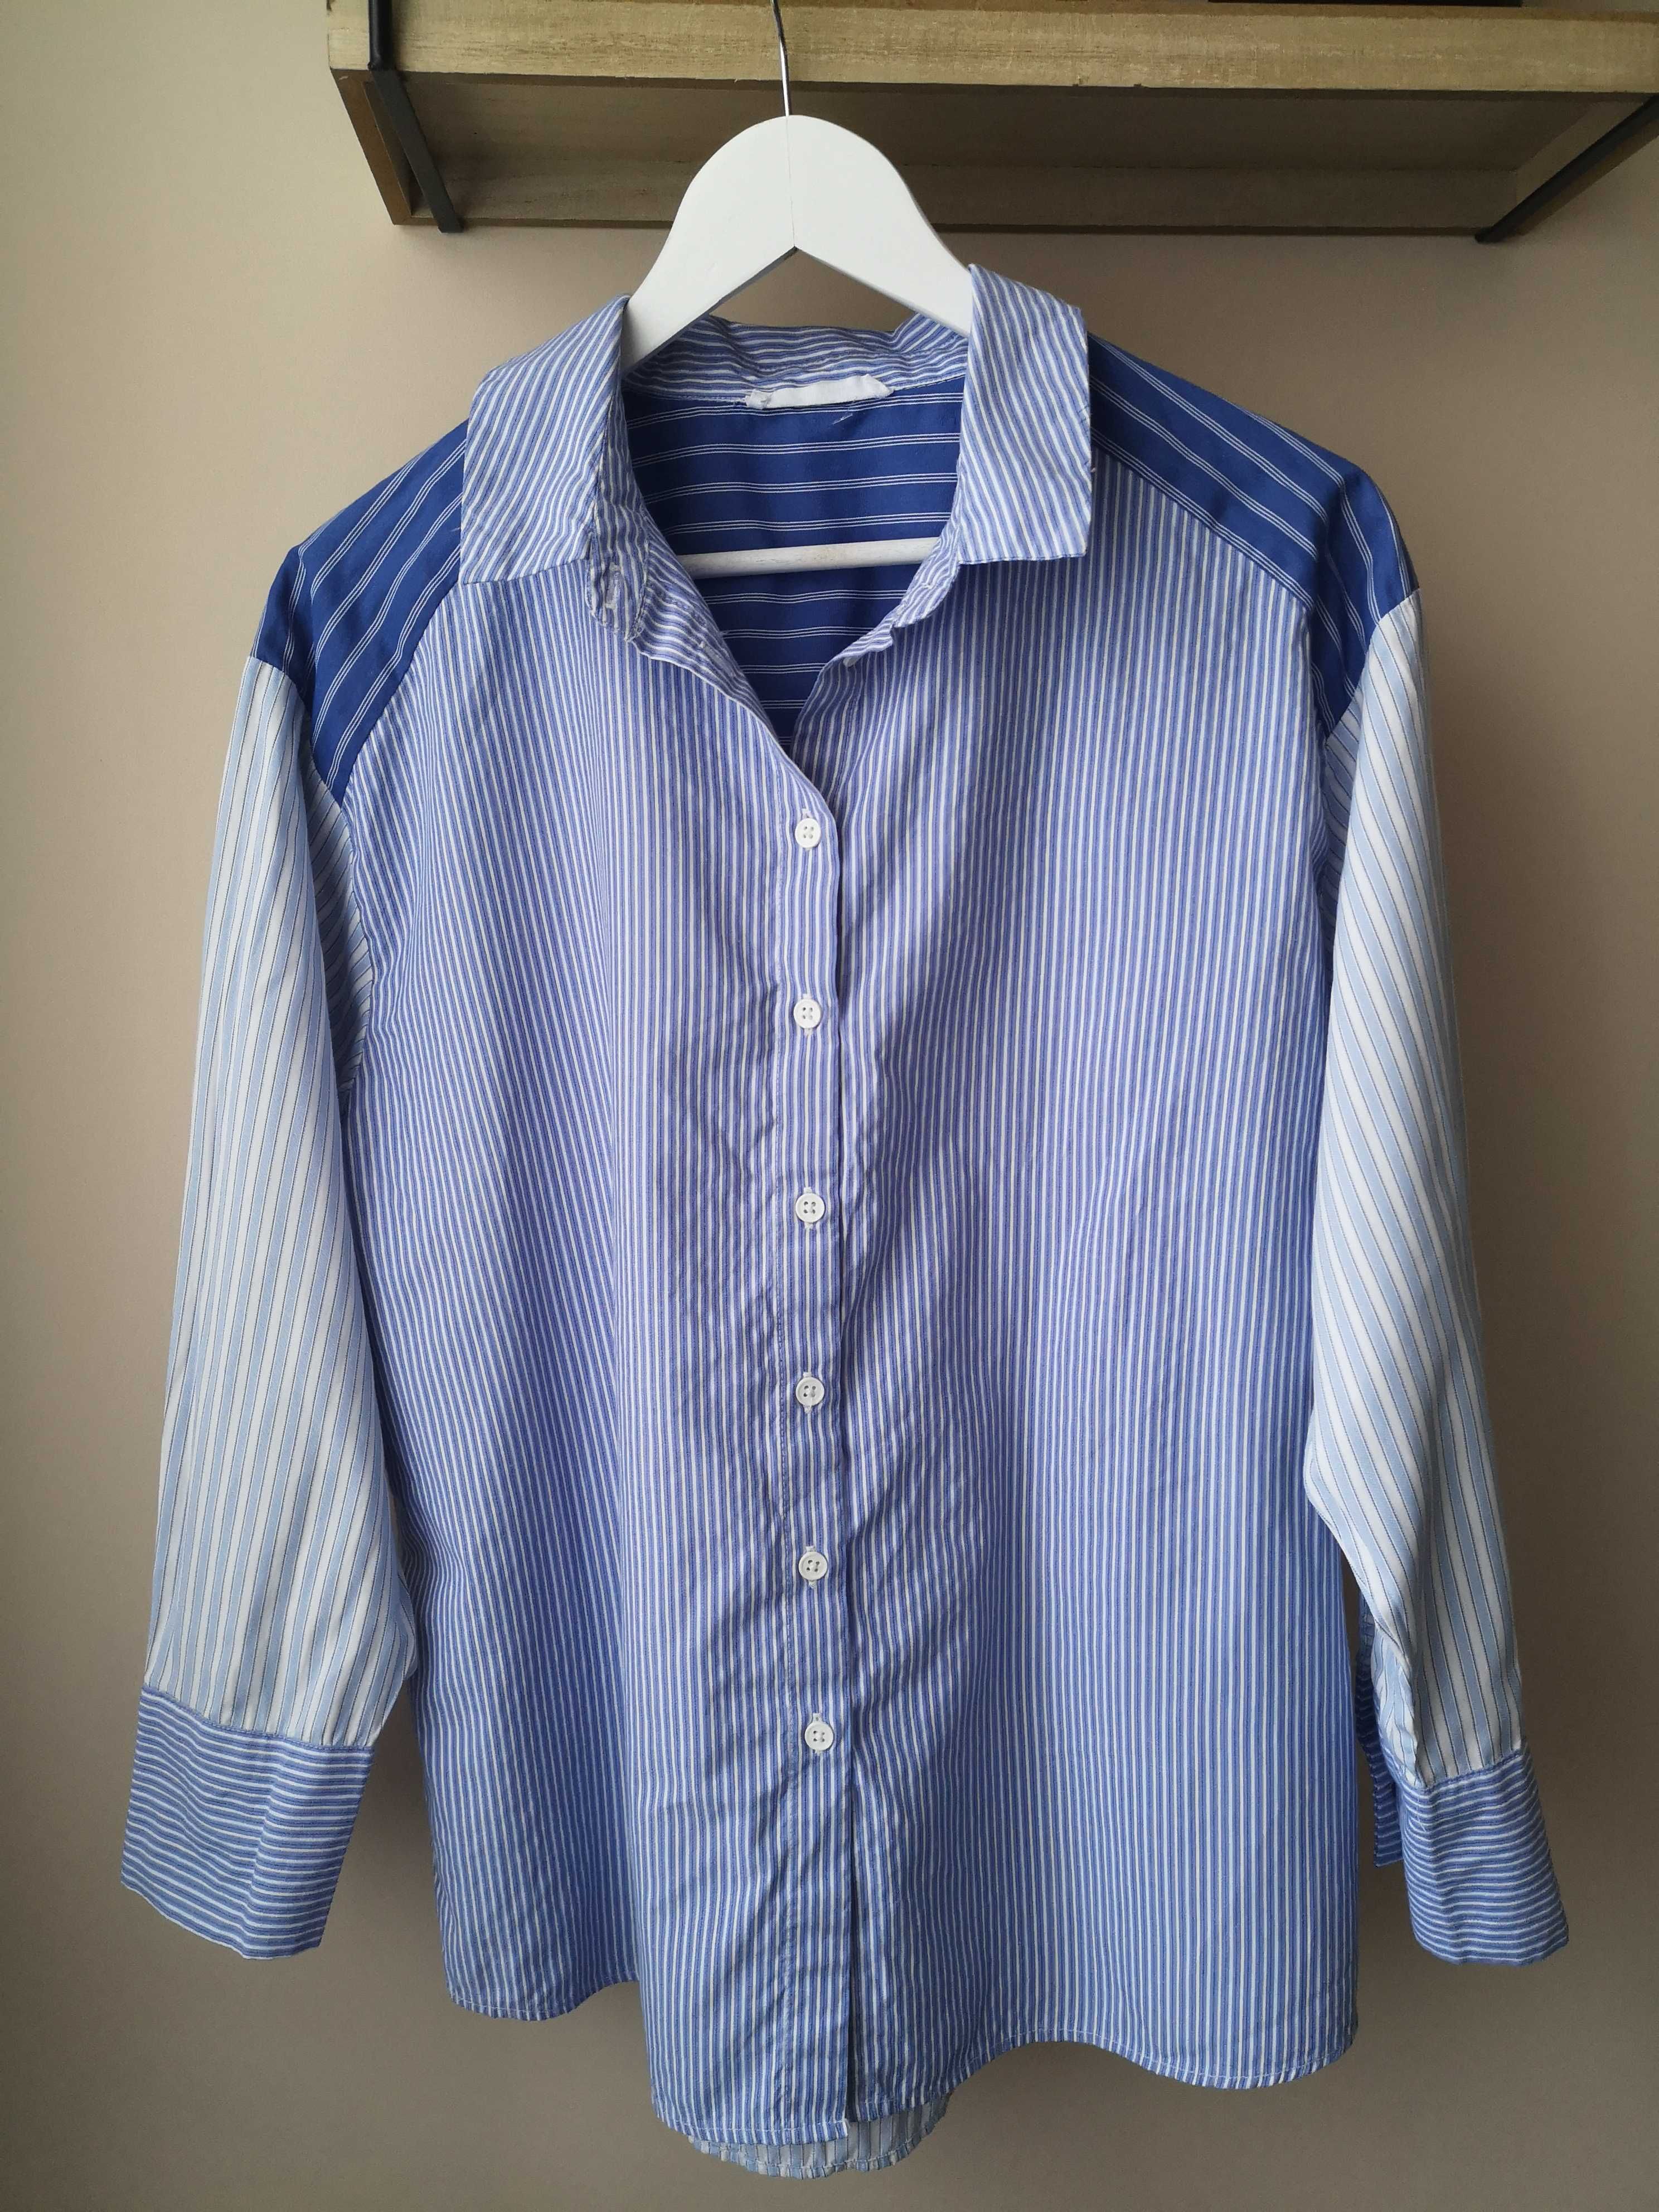 Niebieska koszula w paski Primark rozmiar 40/42